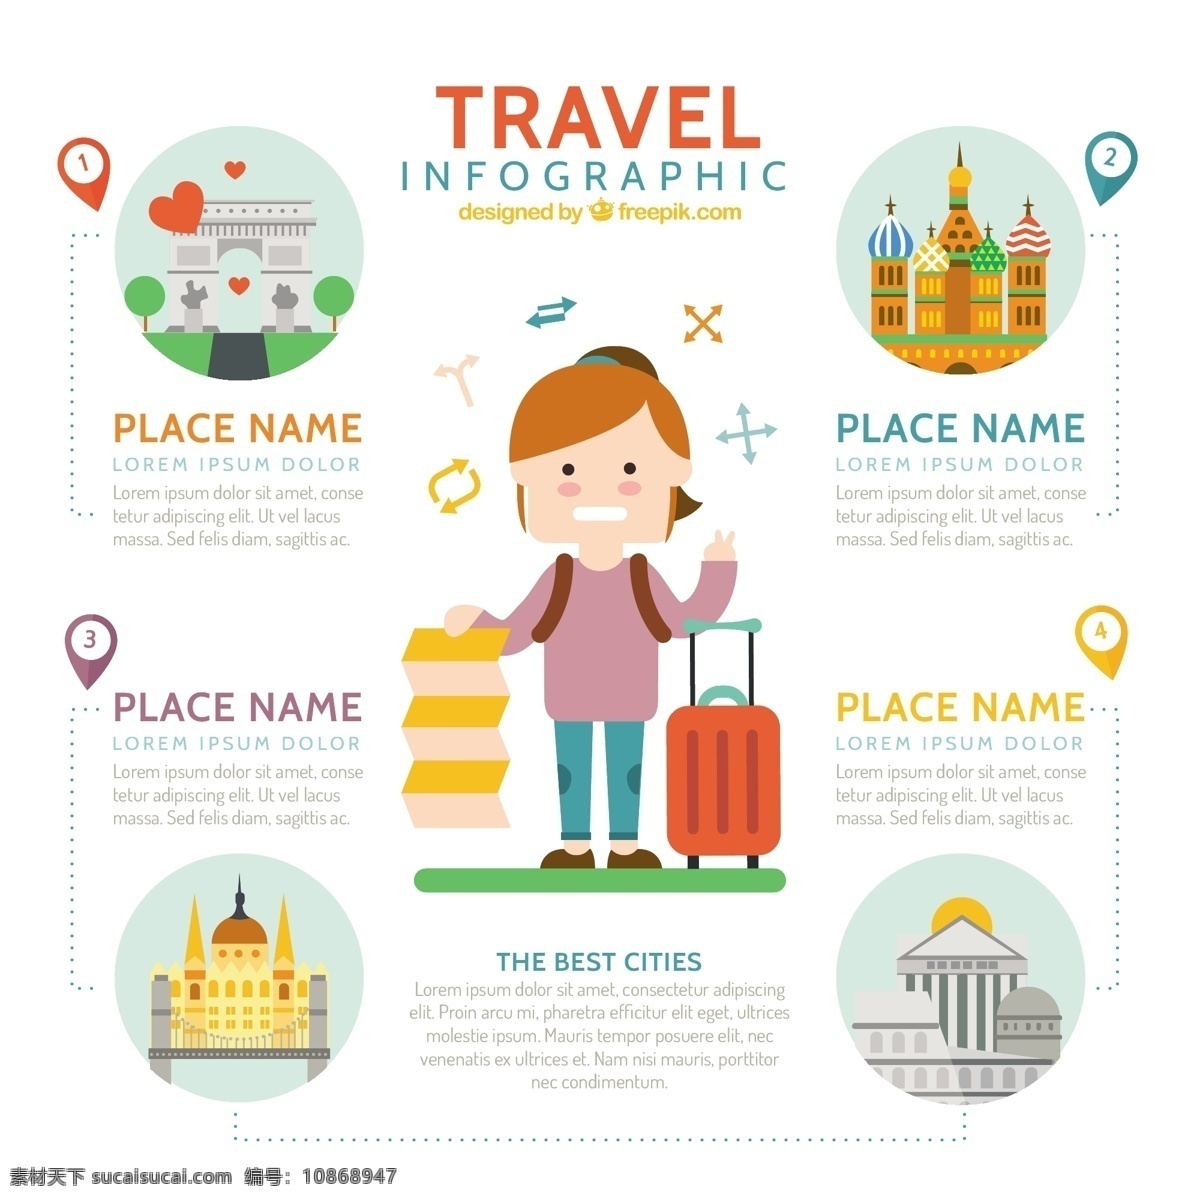 好 旅行者 旅行 元素 infography 图表 地图 世界 世界地图 图形 平印度 征 销 定位 图 信息 流程 数据 要素 信息图表元素 旅游 白色